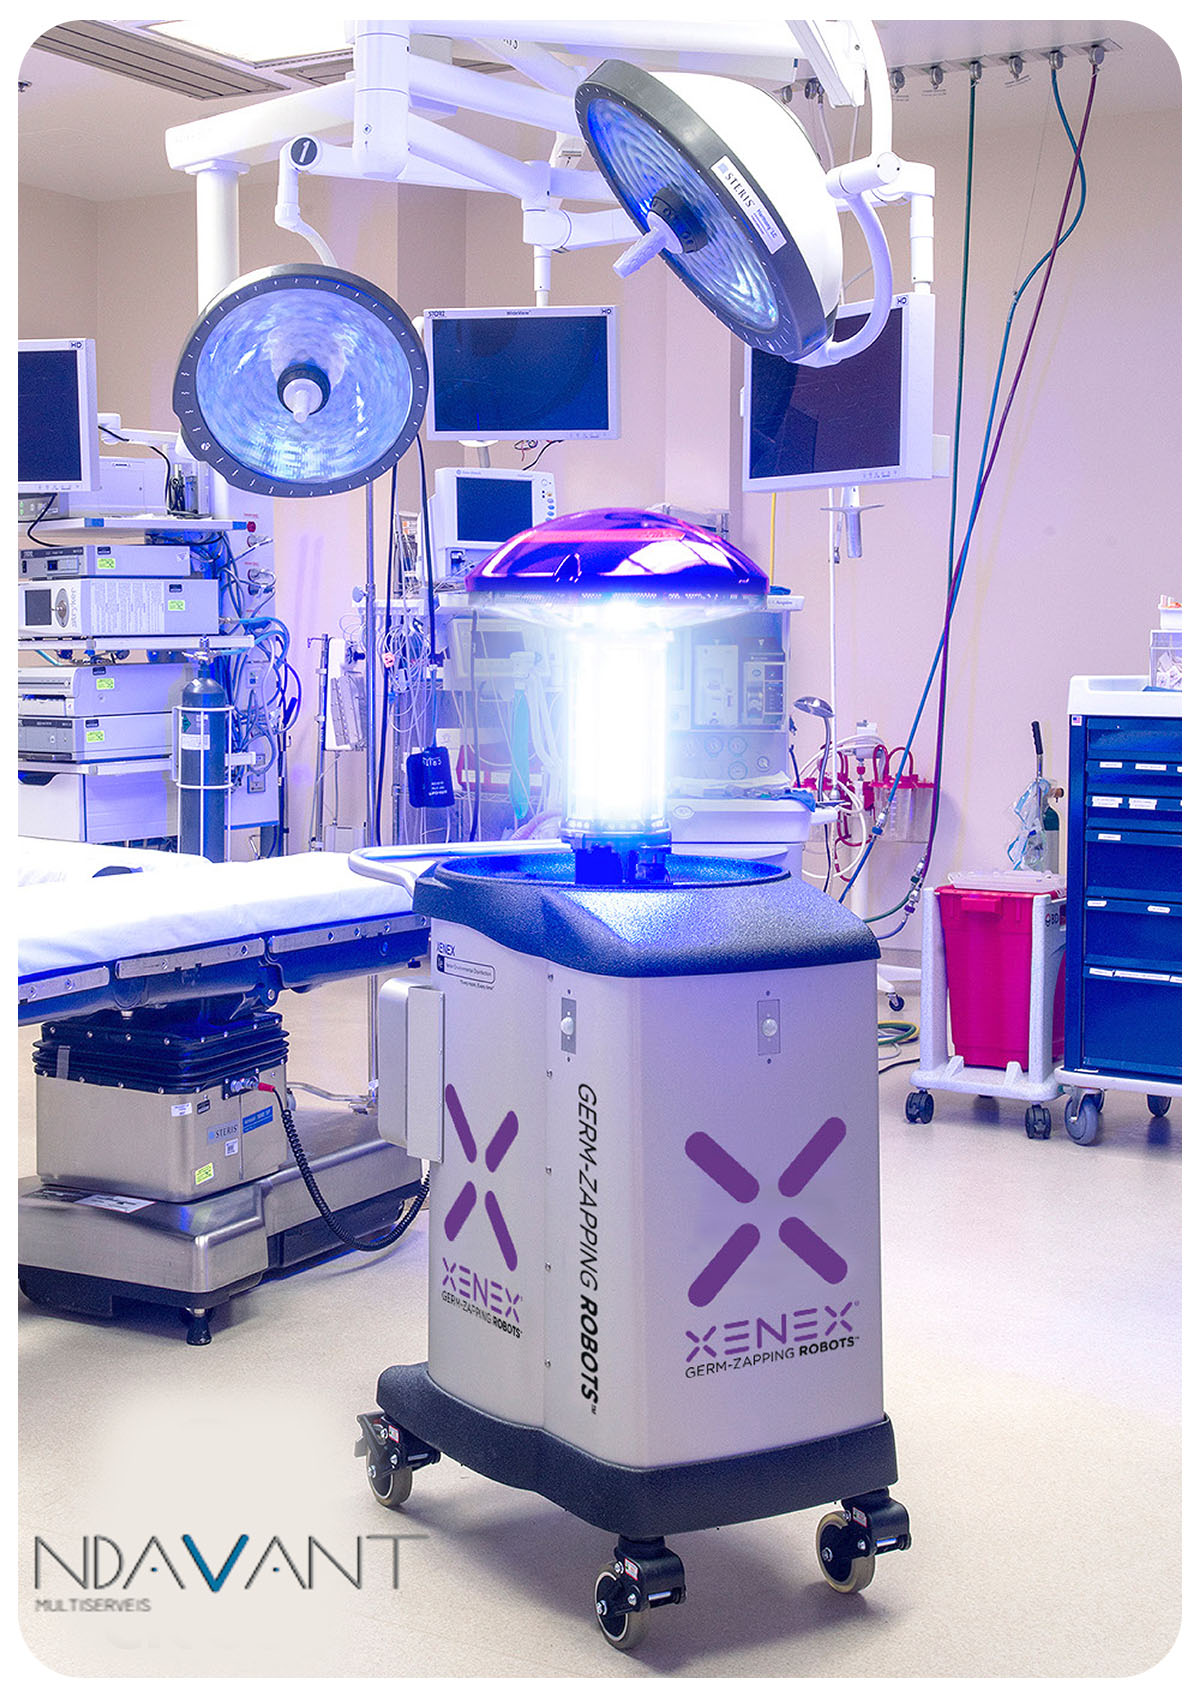  Xenex, robot de desinfección por luz ultravioleta tipo C, con alta eficacia en la eliminación de microorganismos patógenos